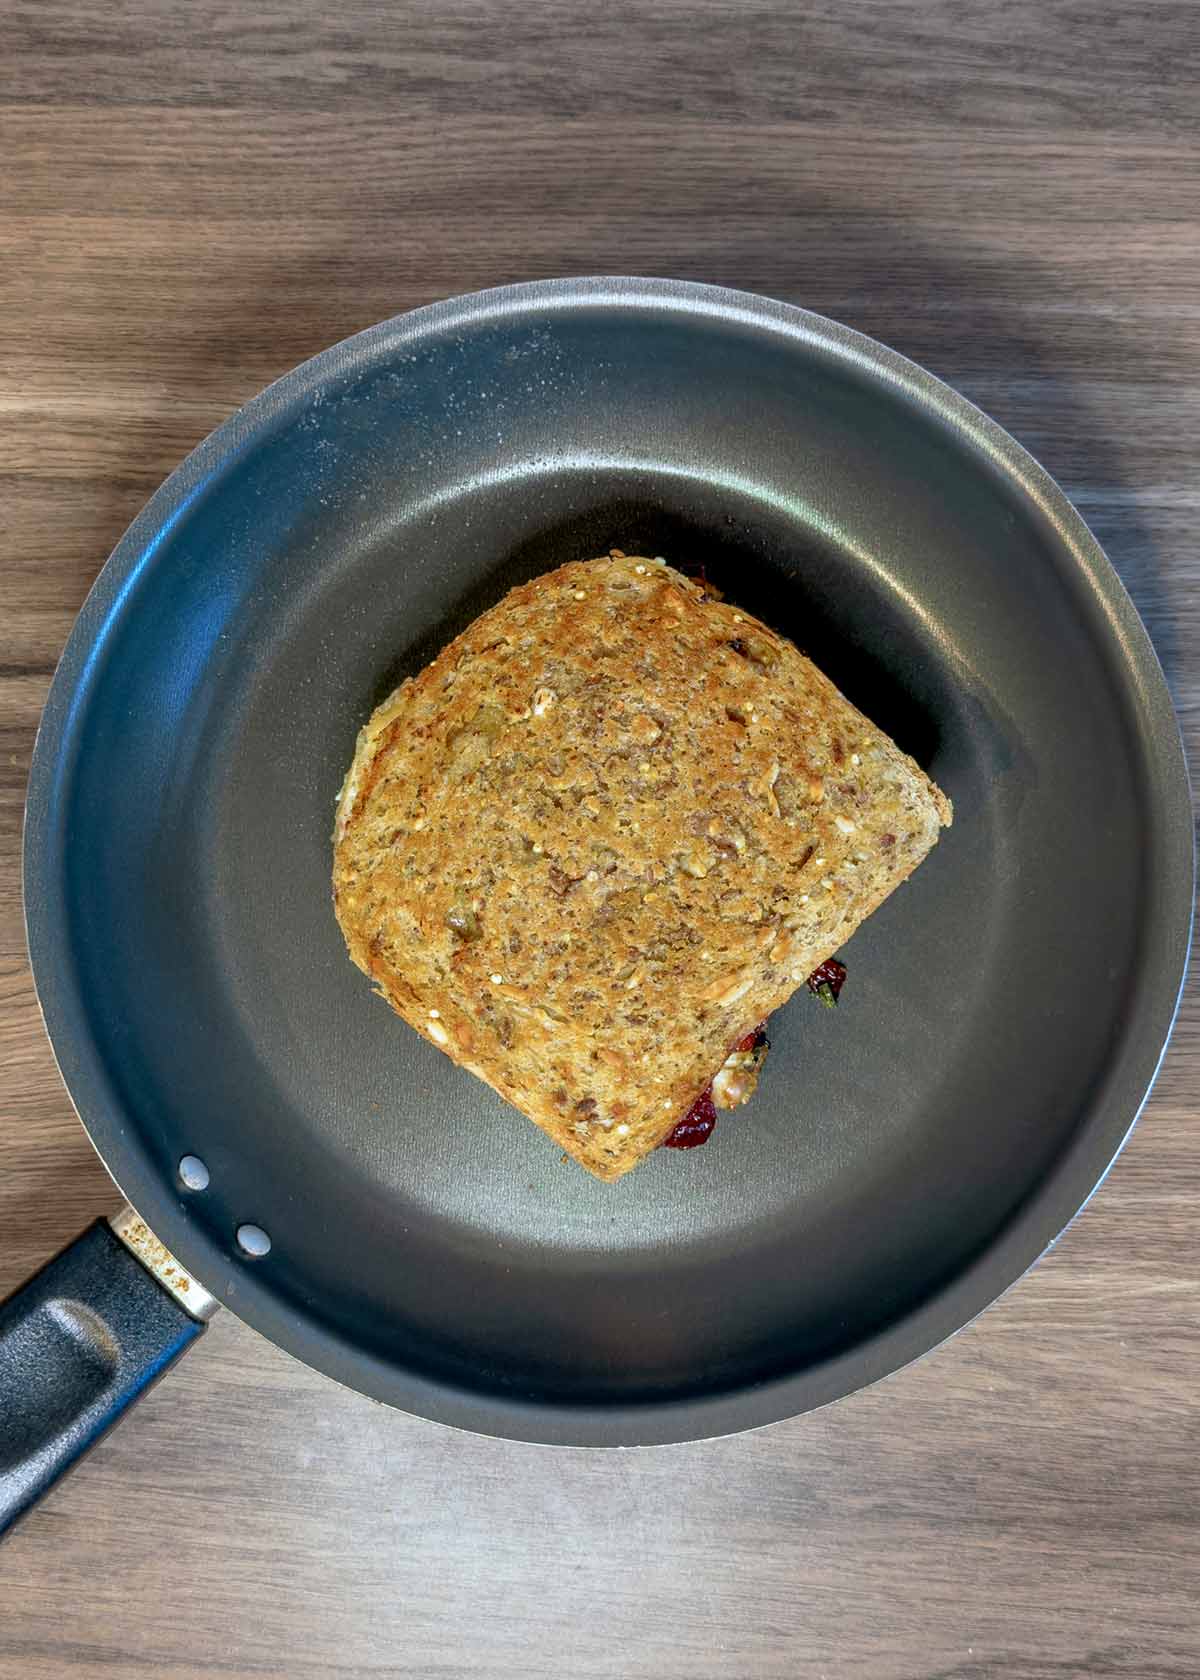 A sandwich frying in a pan.